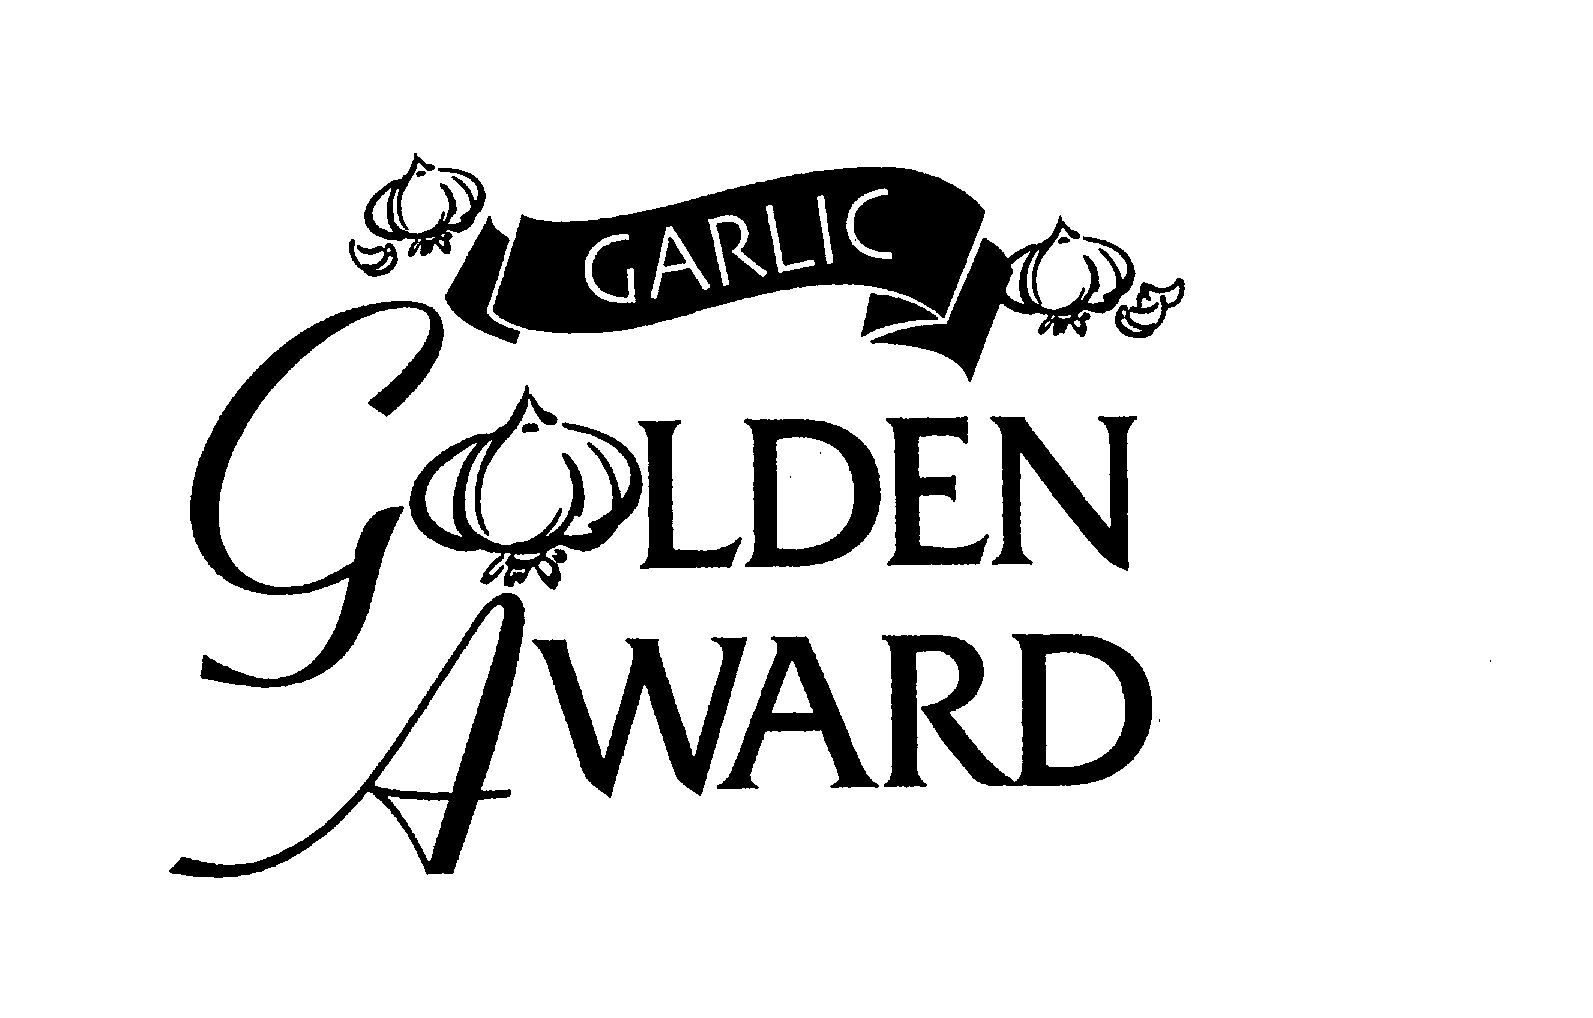 Trademark Logo GARLIC GLODEN AWARD